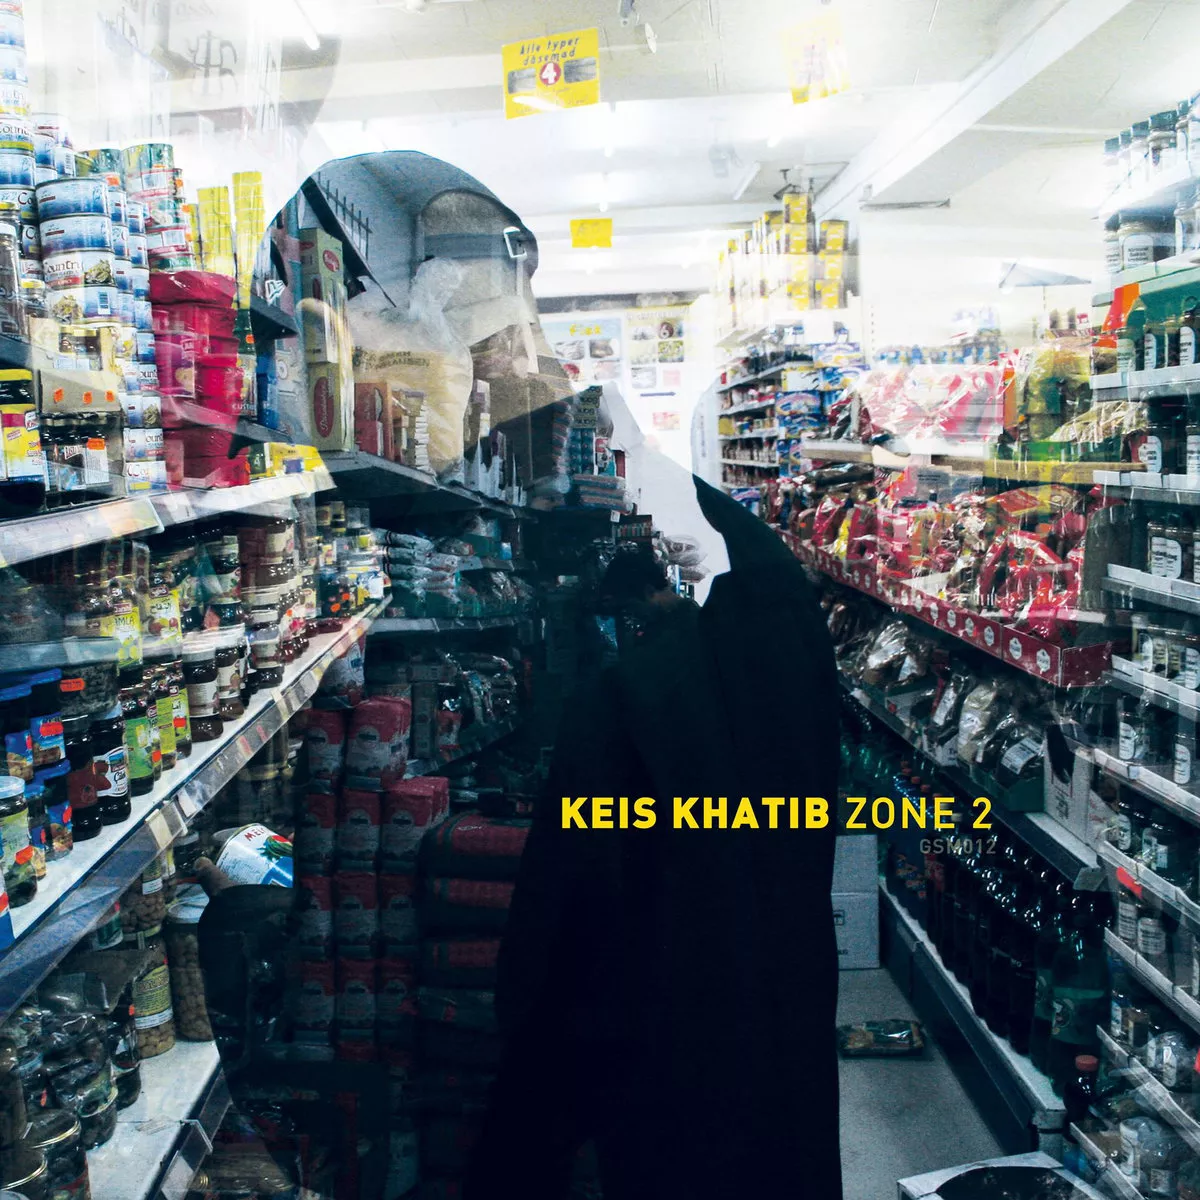 Zone 2 - Keis Khatib